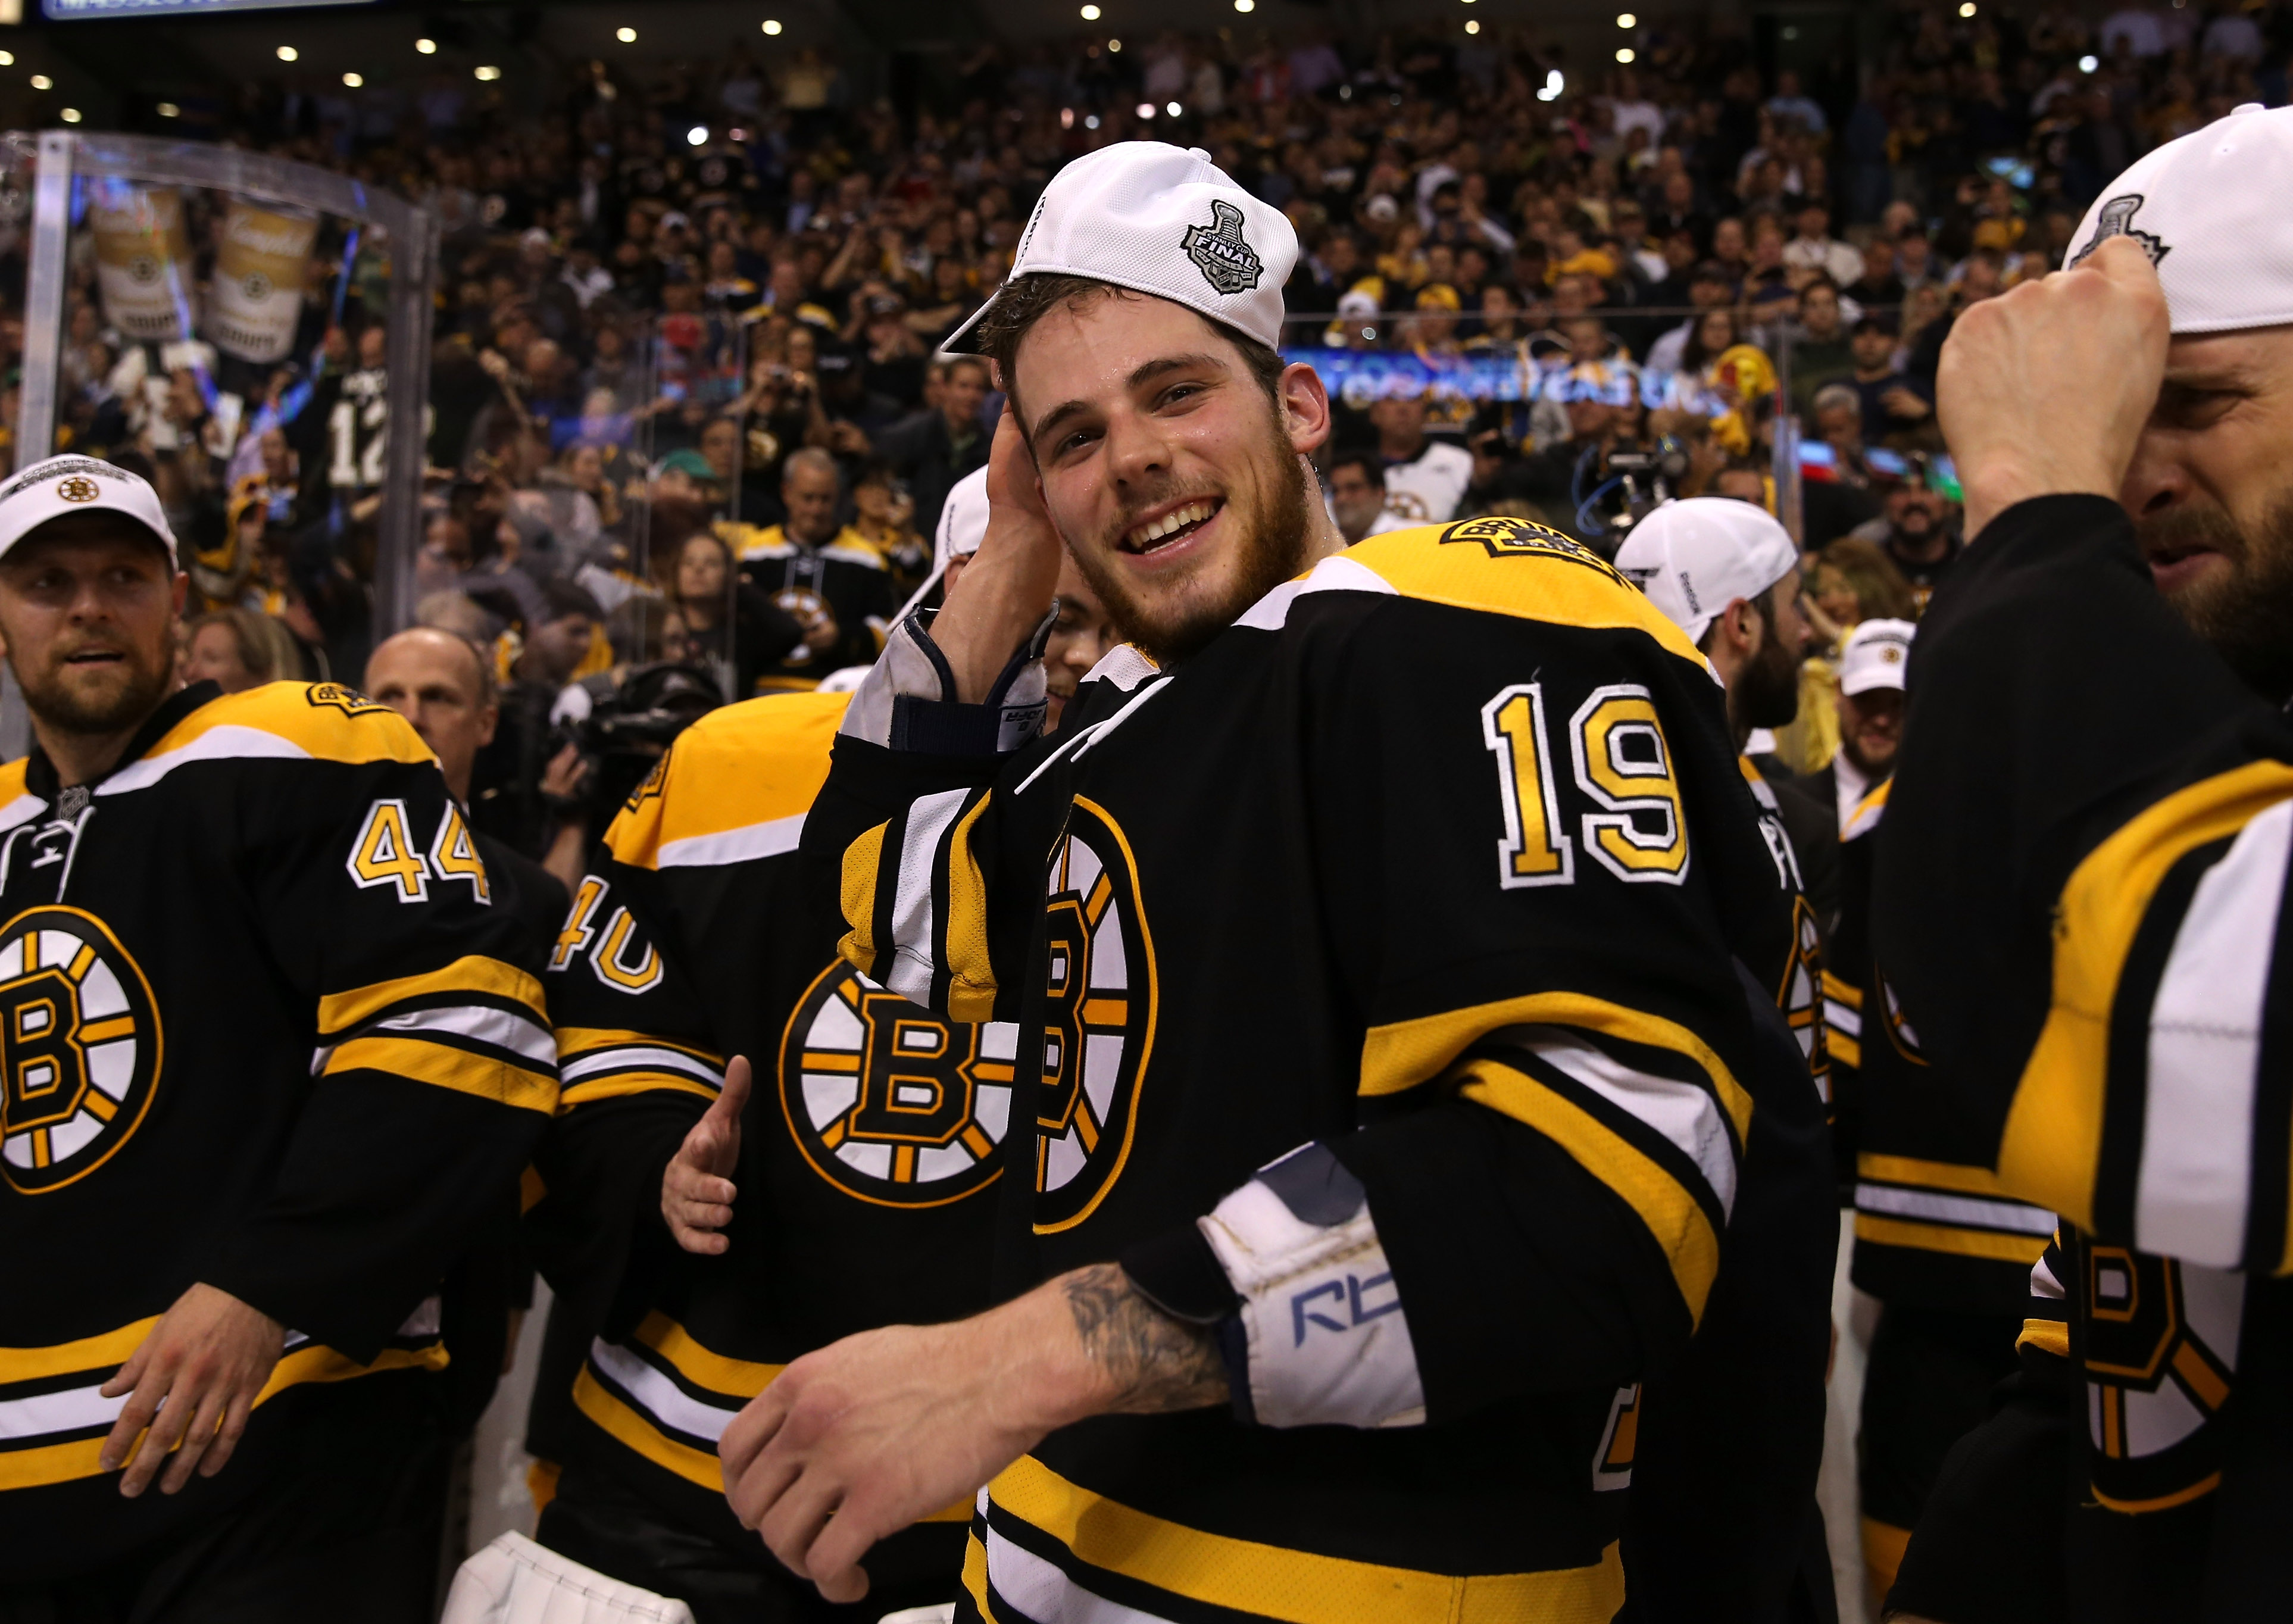 Dating is Dangerous for Bruins' Tyler Seguin - SB Nation Boston